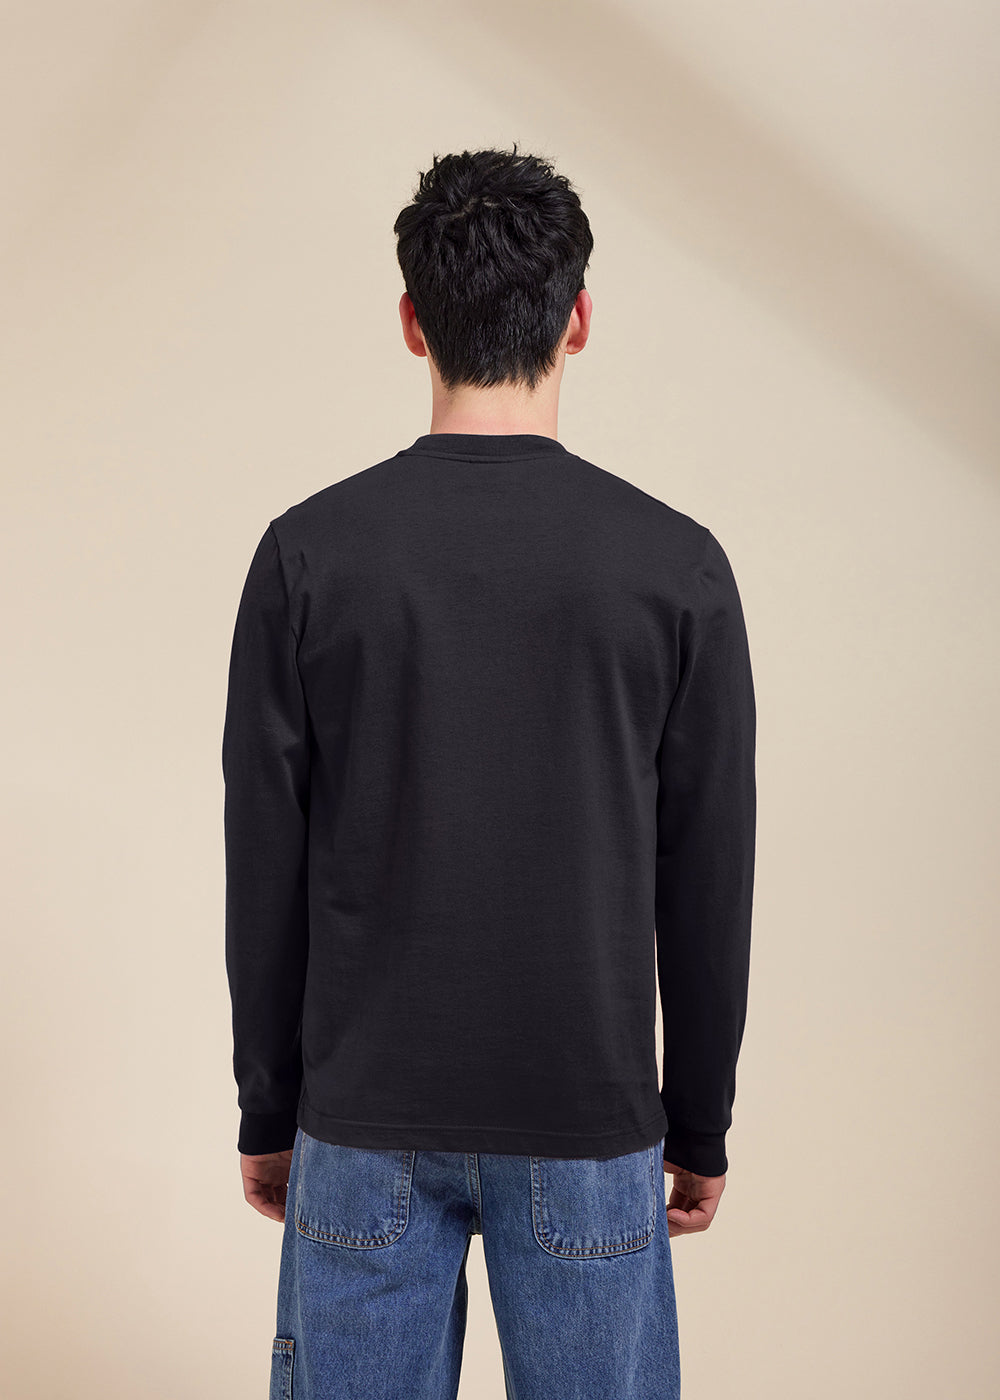 Align unisex longsleeve t-shirt black-2